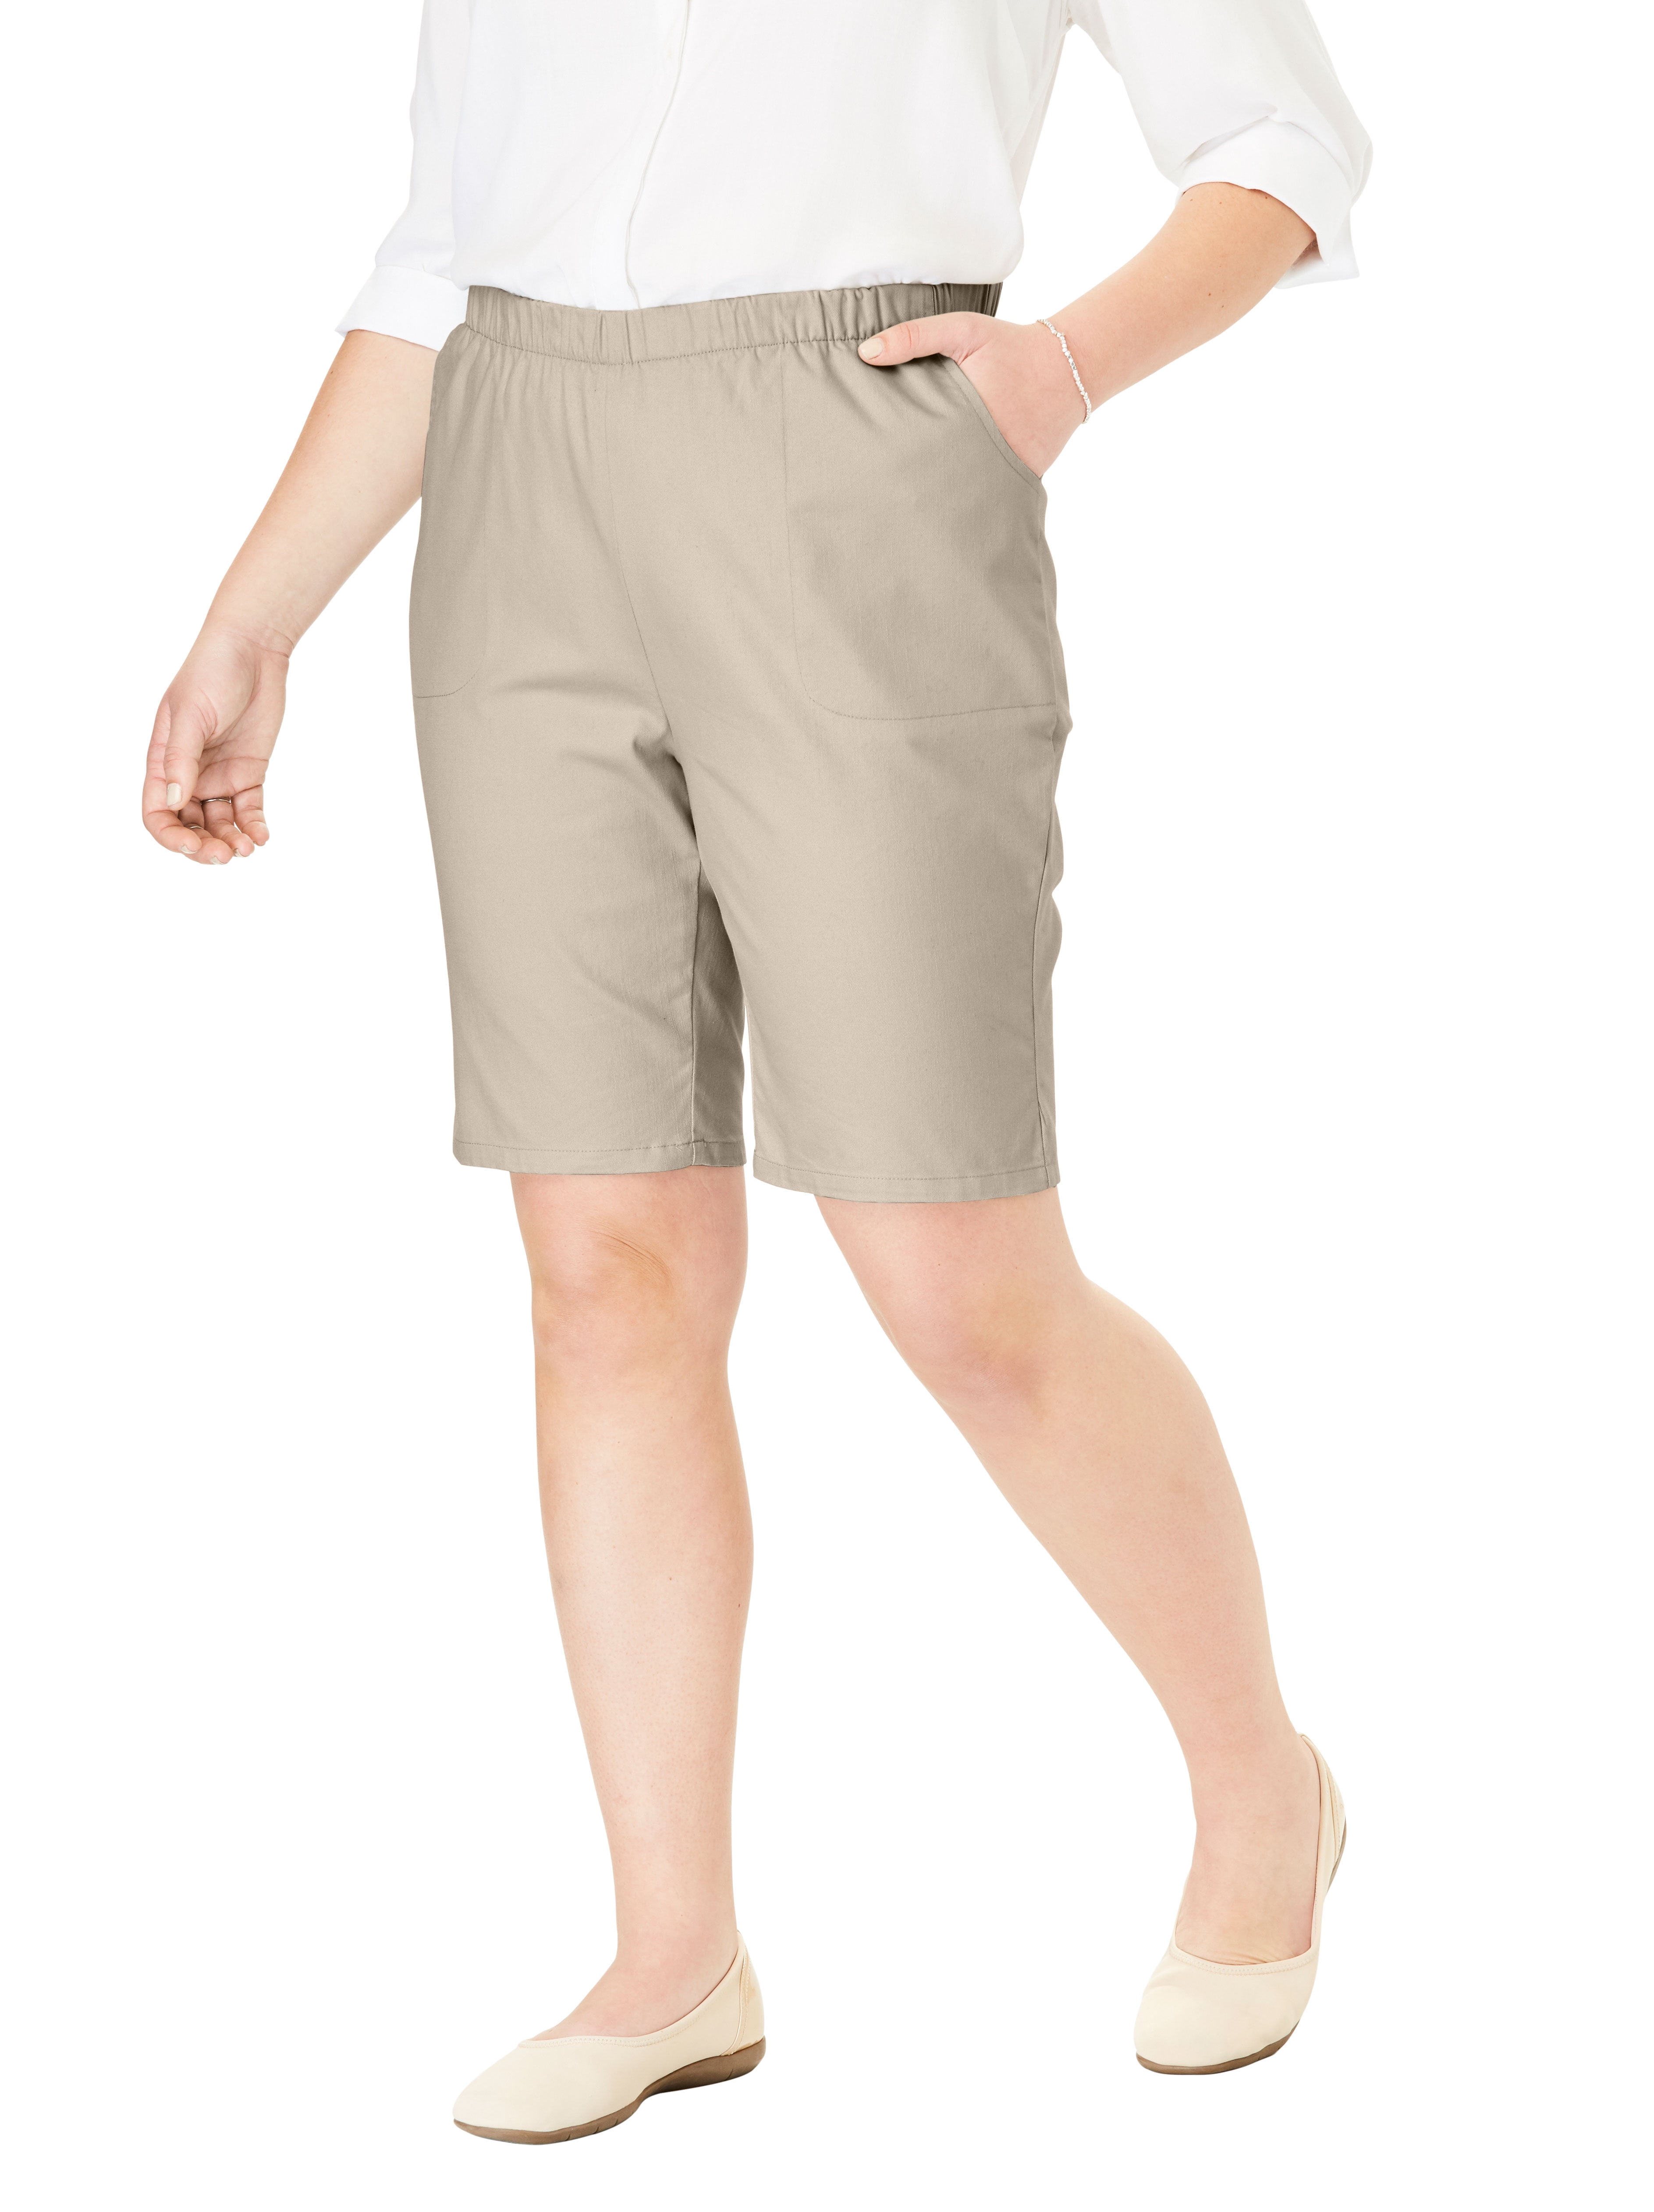 walmart women's plus size shorts